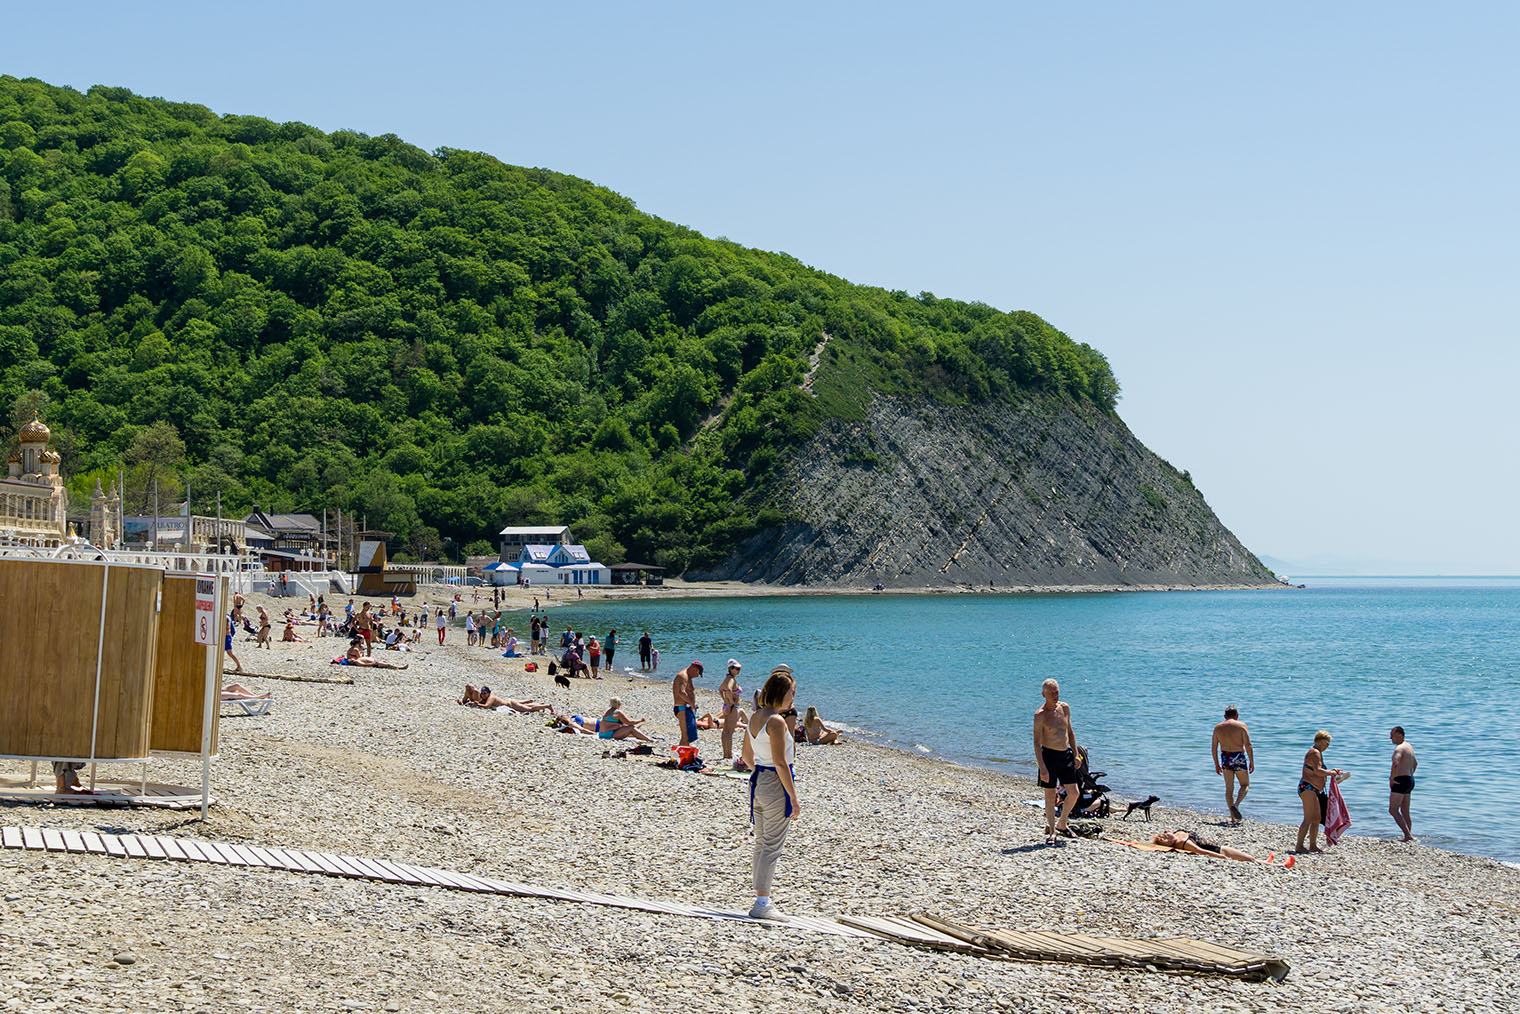 Пляж в Архипо-Осиповке. Фотография: Marinodenisenko / Shutterstock / FOTODOM